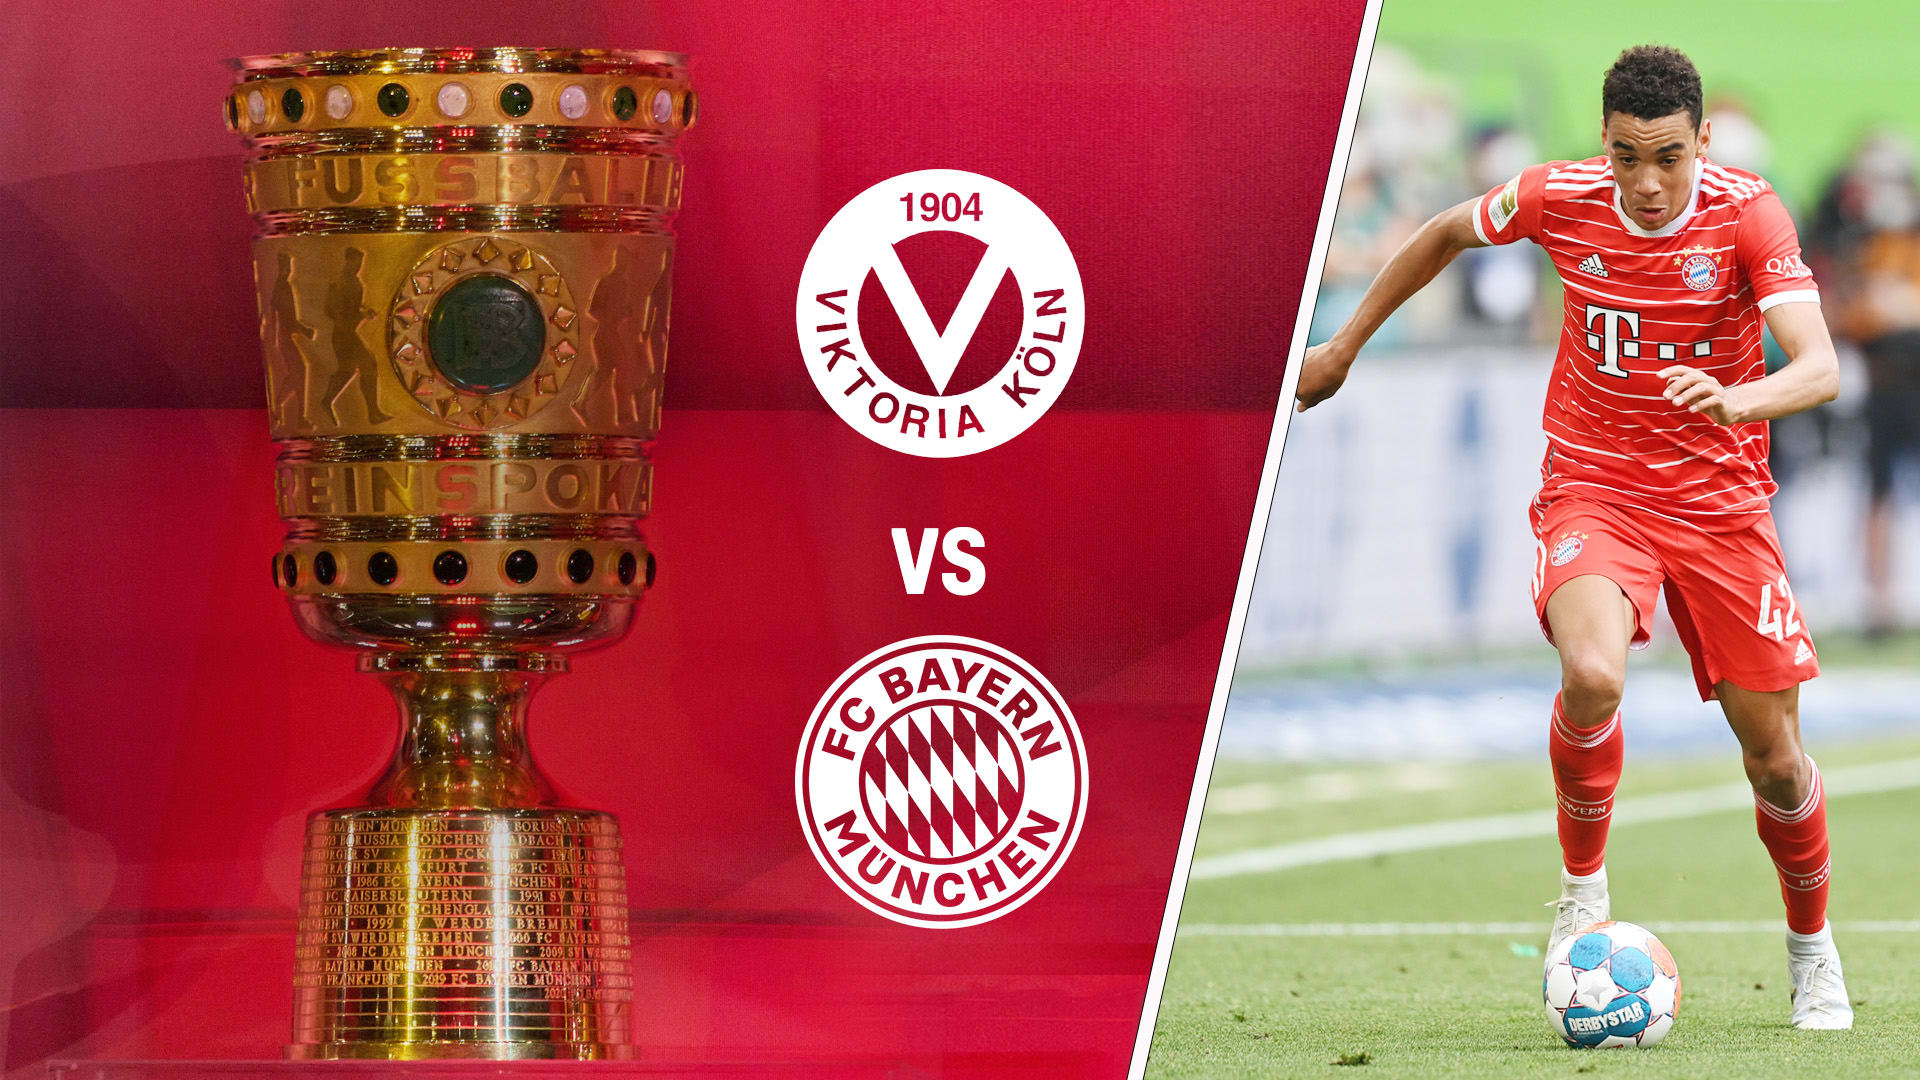 You are currently viewing Schirikarten Pokalspiel Viktoria Köln vs Bayern München